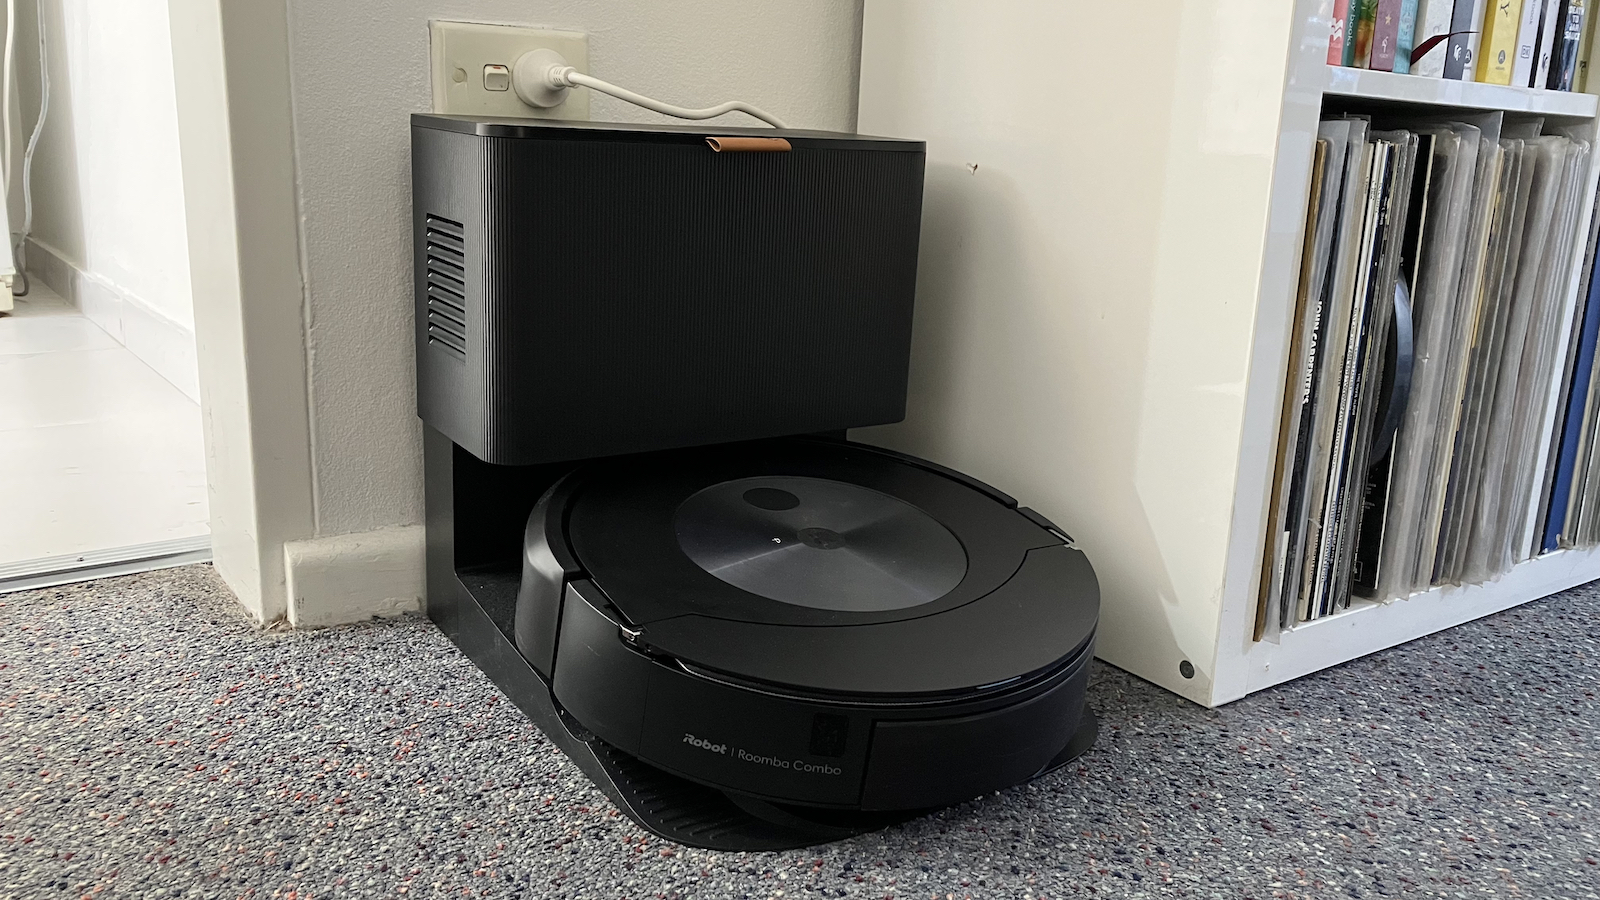 iRobot Roomba Combo j7+ robot vacuum